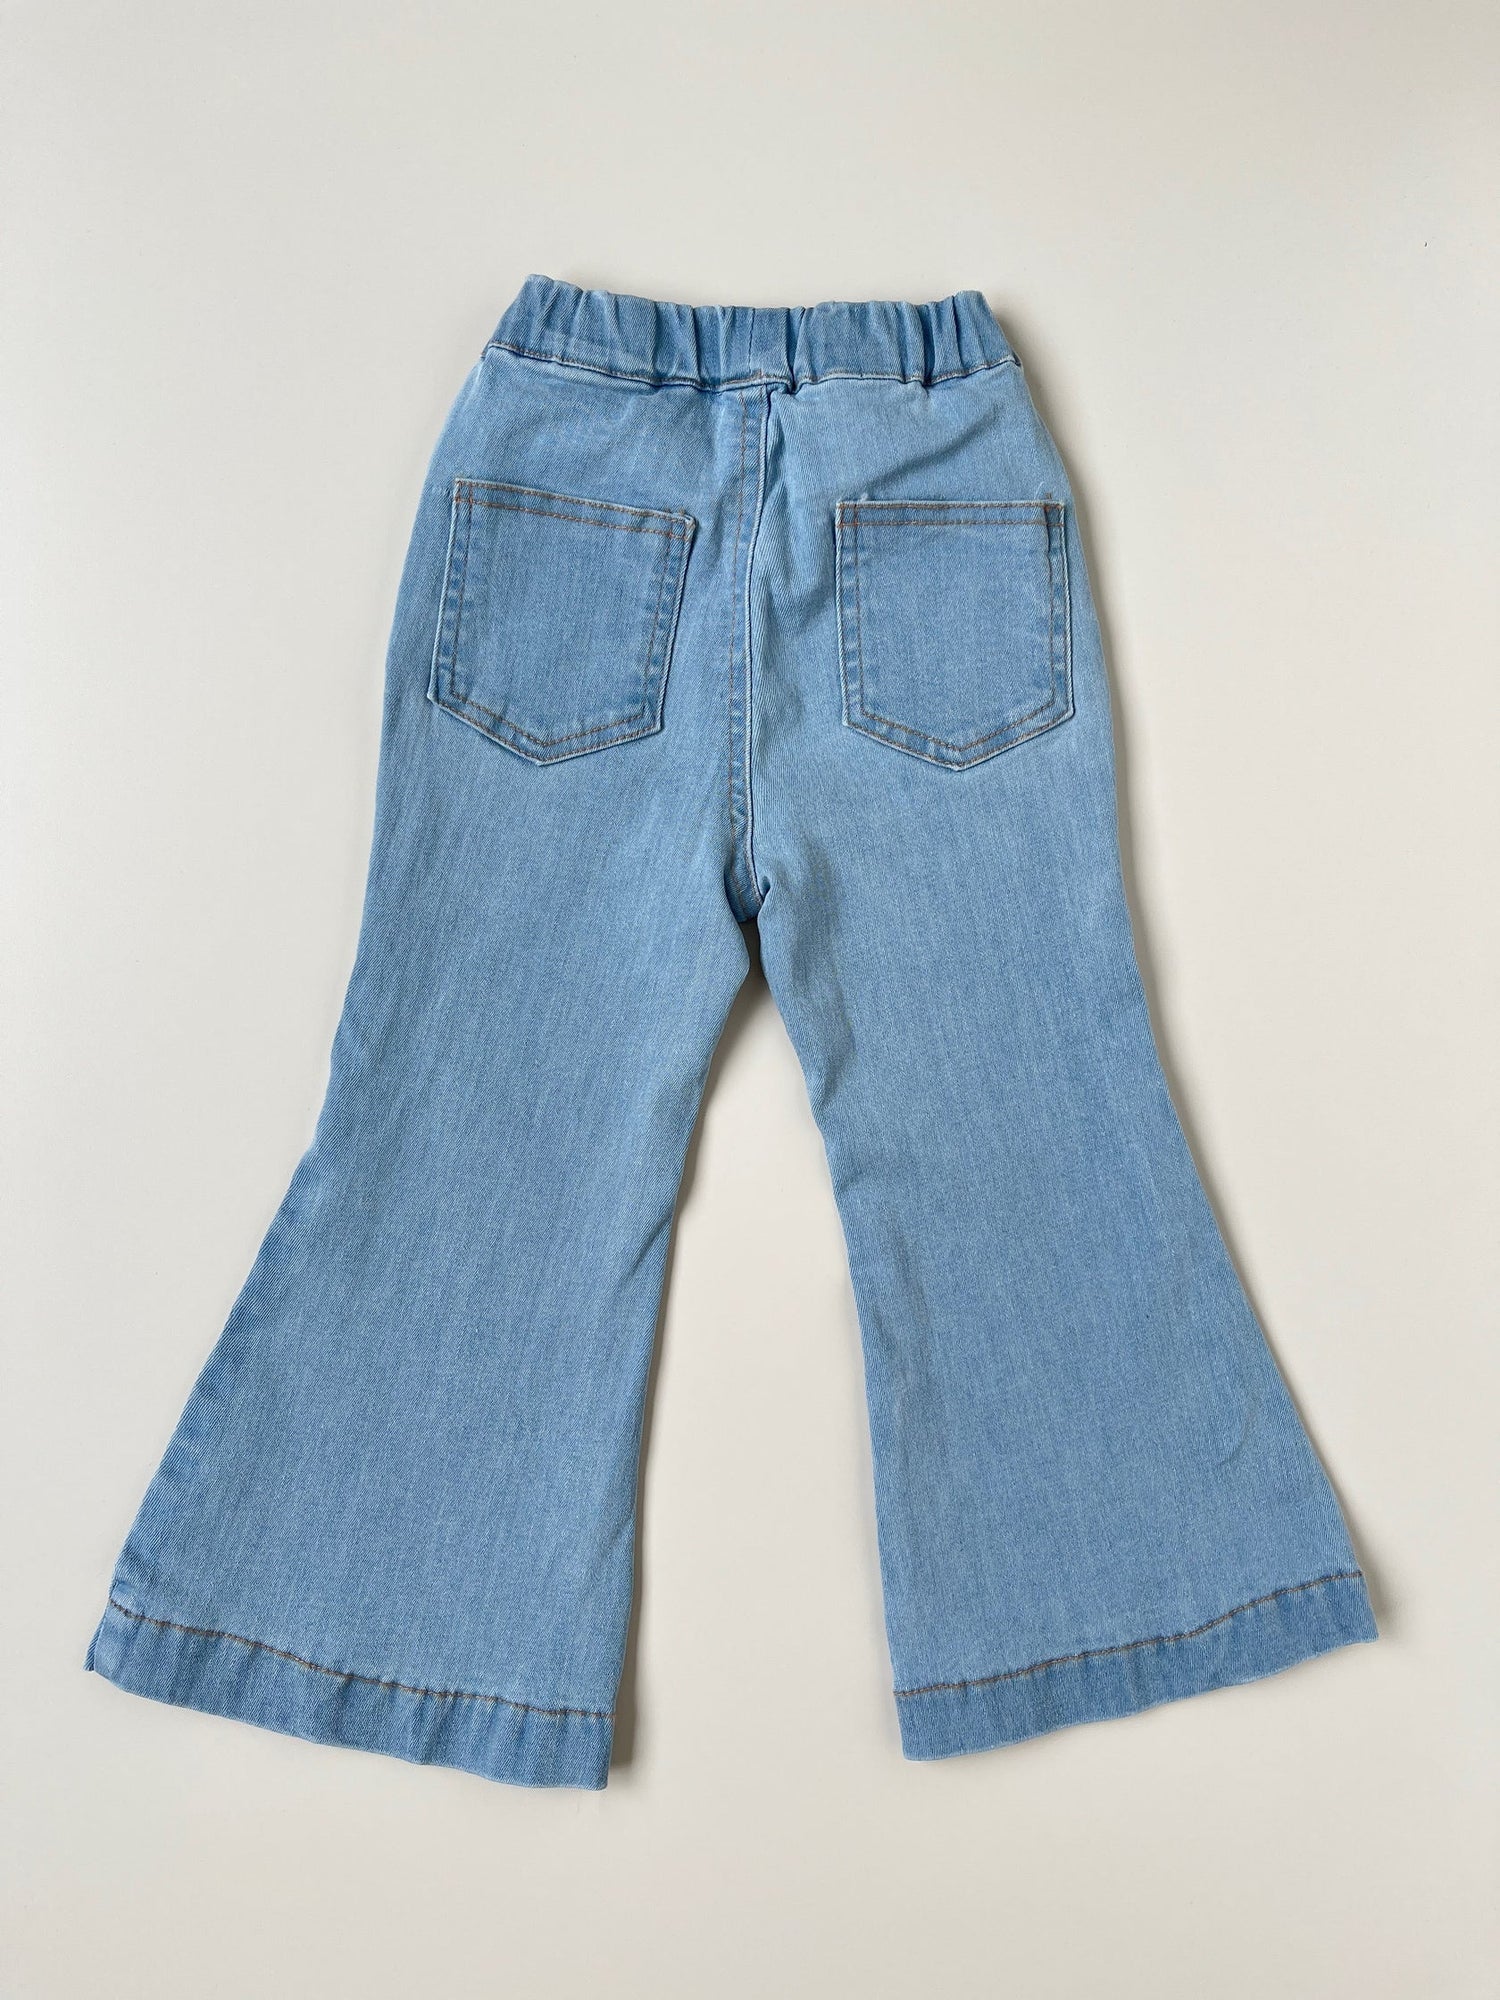 Flared Leg Jeans - Light denim blue - Kids